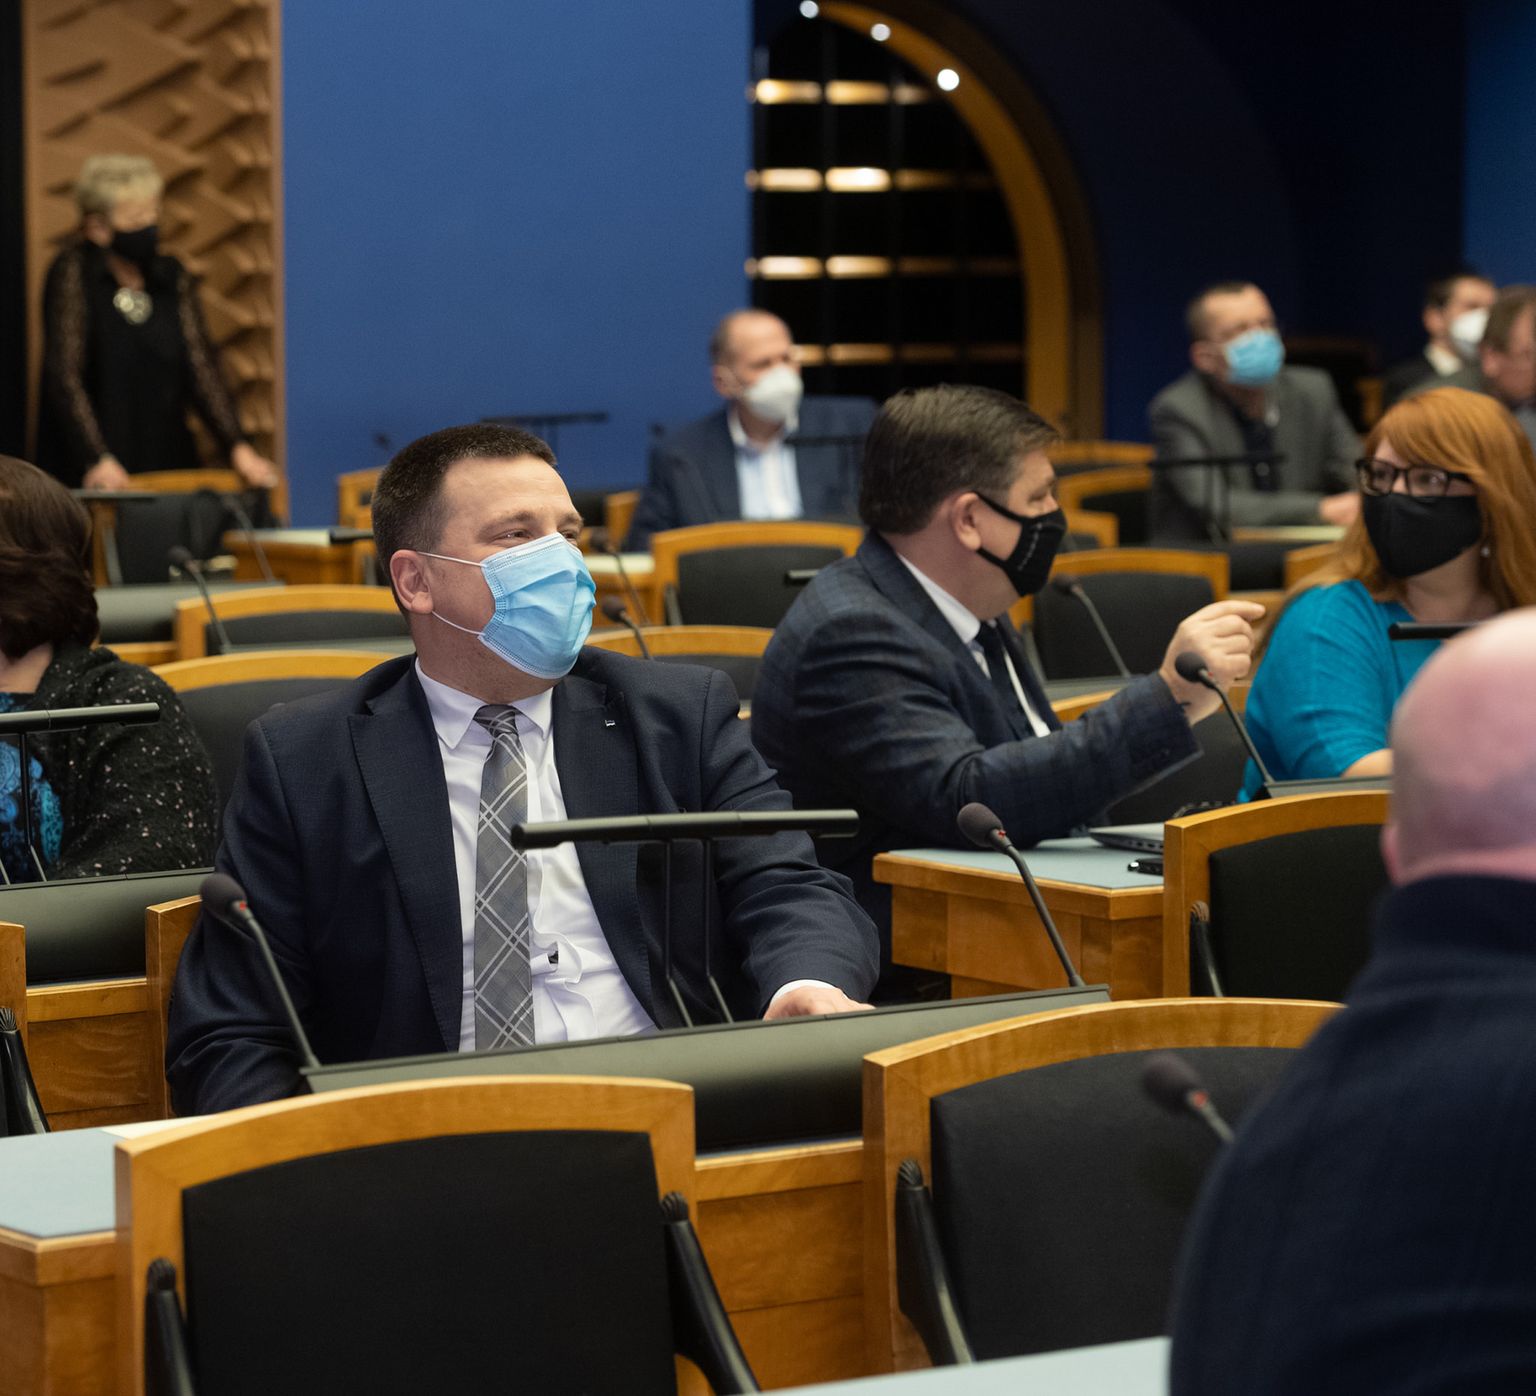 Riigikogu liige Jüri Ratas pärast peaministriametit esimesel tööpäeval parlamendis. Nüüd pürgib ta riigikogu esimeheks.